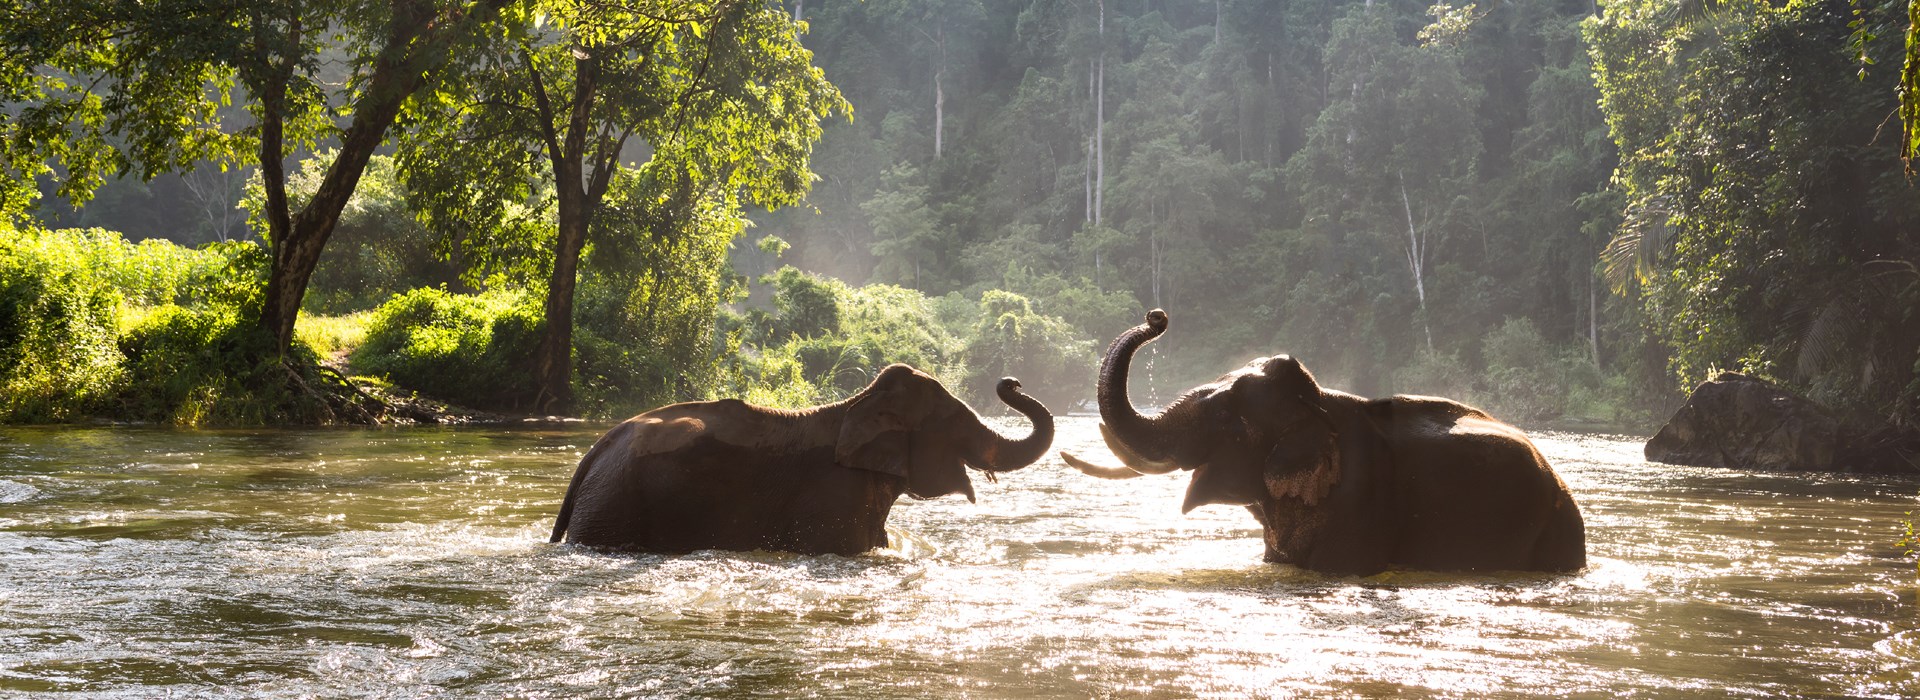 Visiter Le sanctuaire pour éléphants - Cambodge